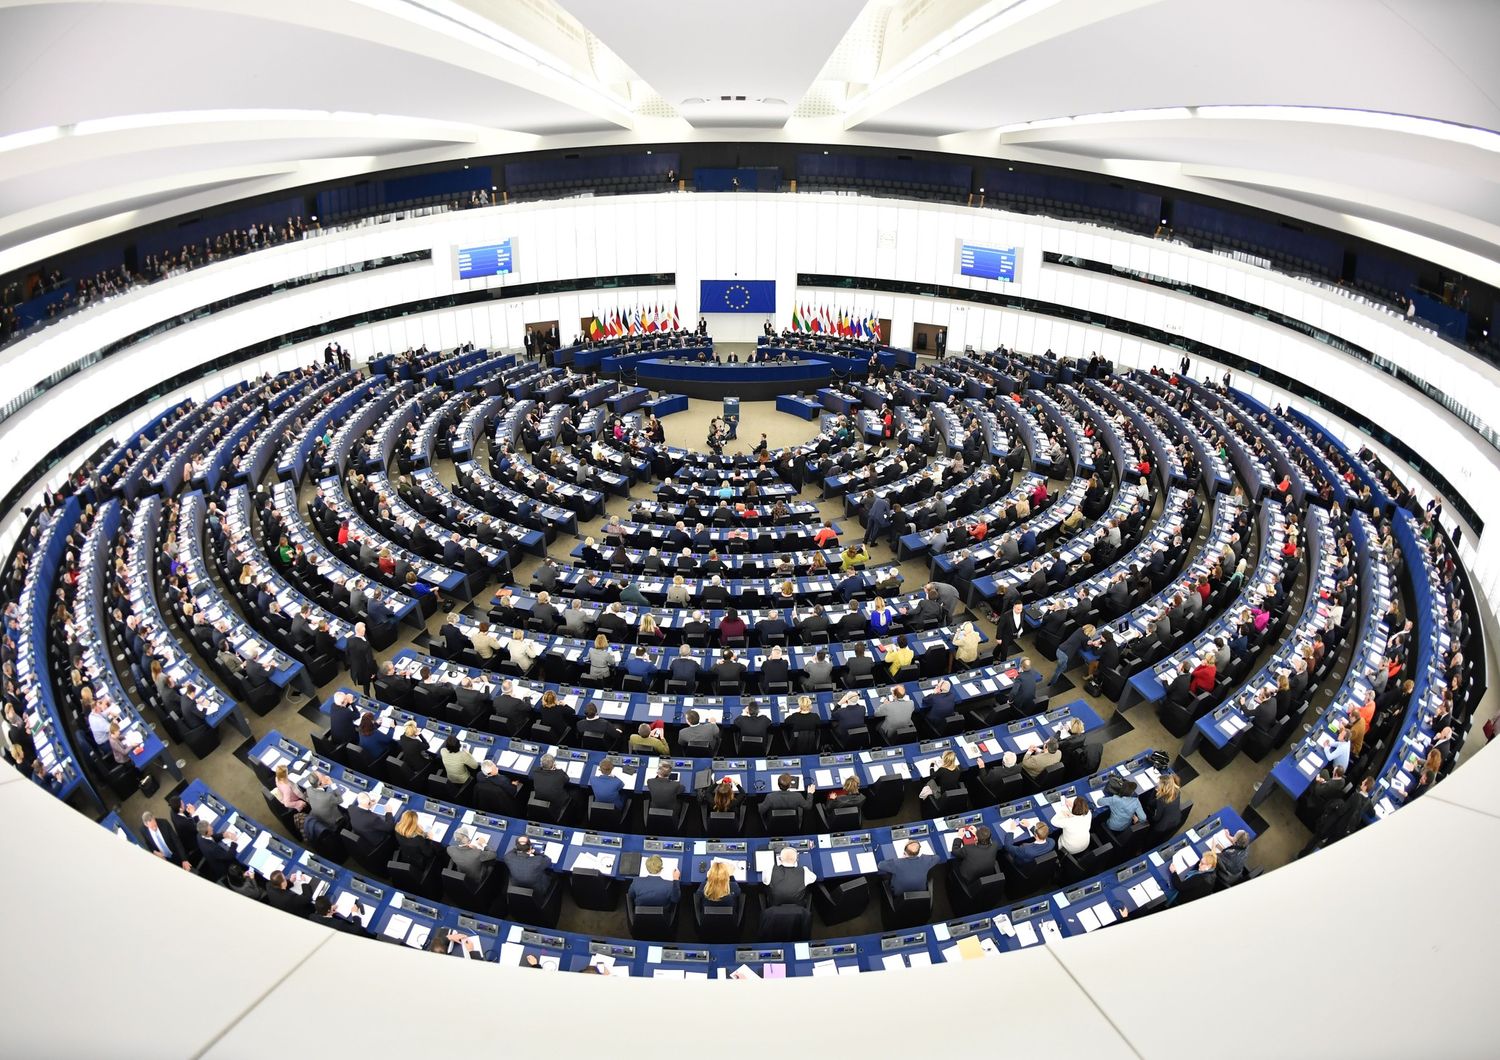 Il Parlamento Europeo vota per il nuovo Presidente. Panoramica della sessione plenaria della marcatura per l'elezione del nuovo Presidente a Strasburgo, Francia Parlamento europeo (foto Afp)&nbsp;